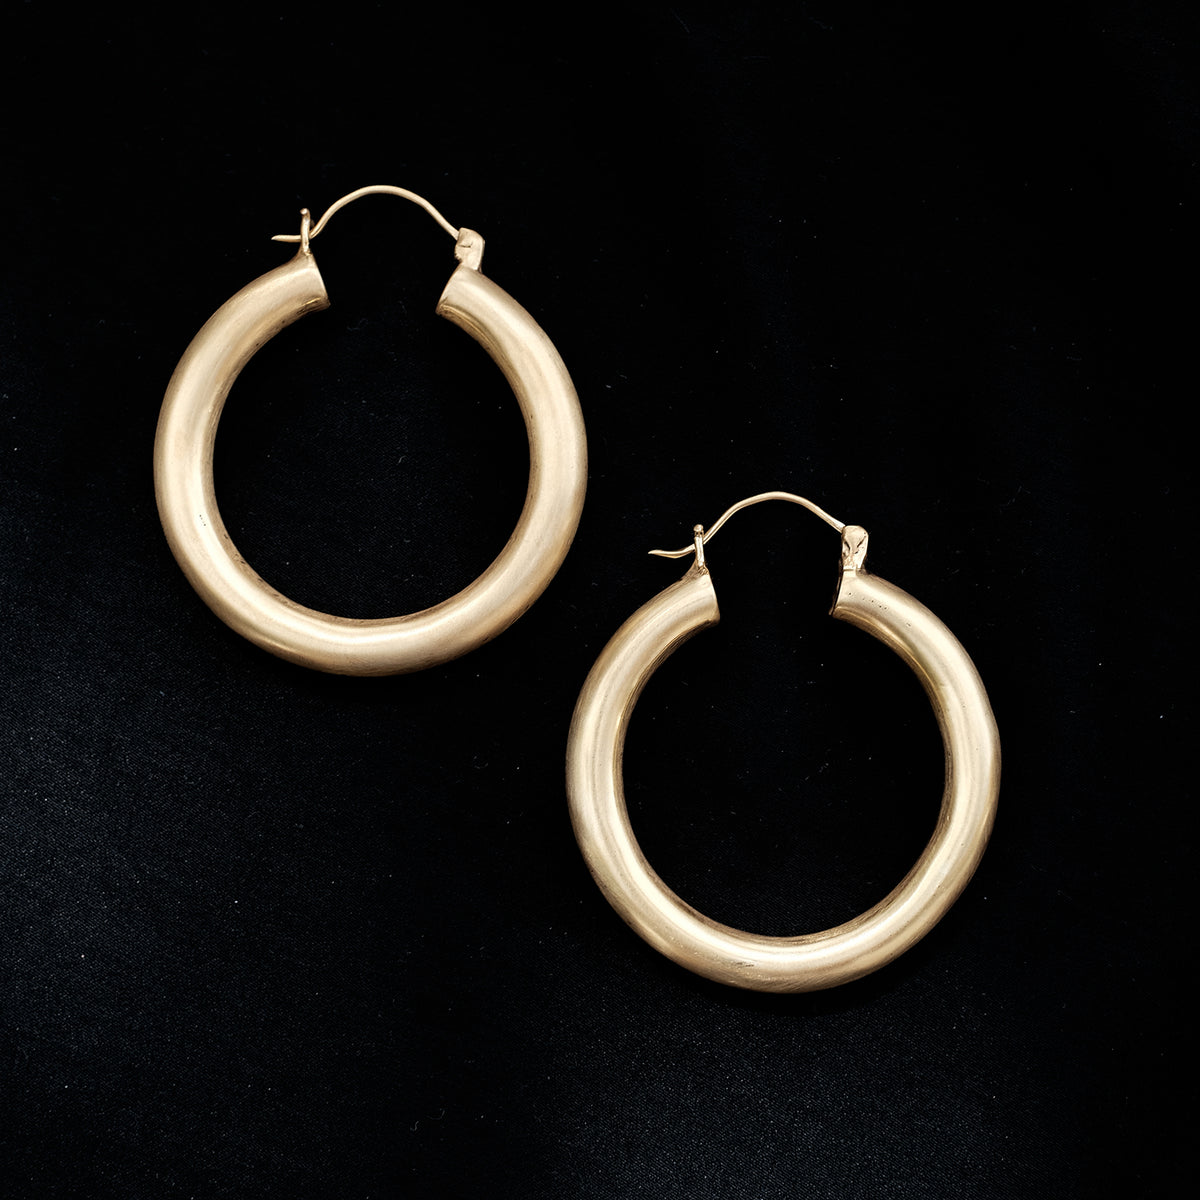 Aros grandes artesanales hechos a mano en plata de ley con baño de oro mateado. Diámetro&nbsp; 4´5 cm Peso 22 g Criollas de plata dorada. Aros XL  Oversized hollow hoop earrings.